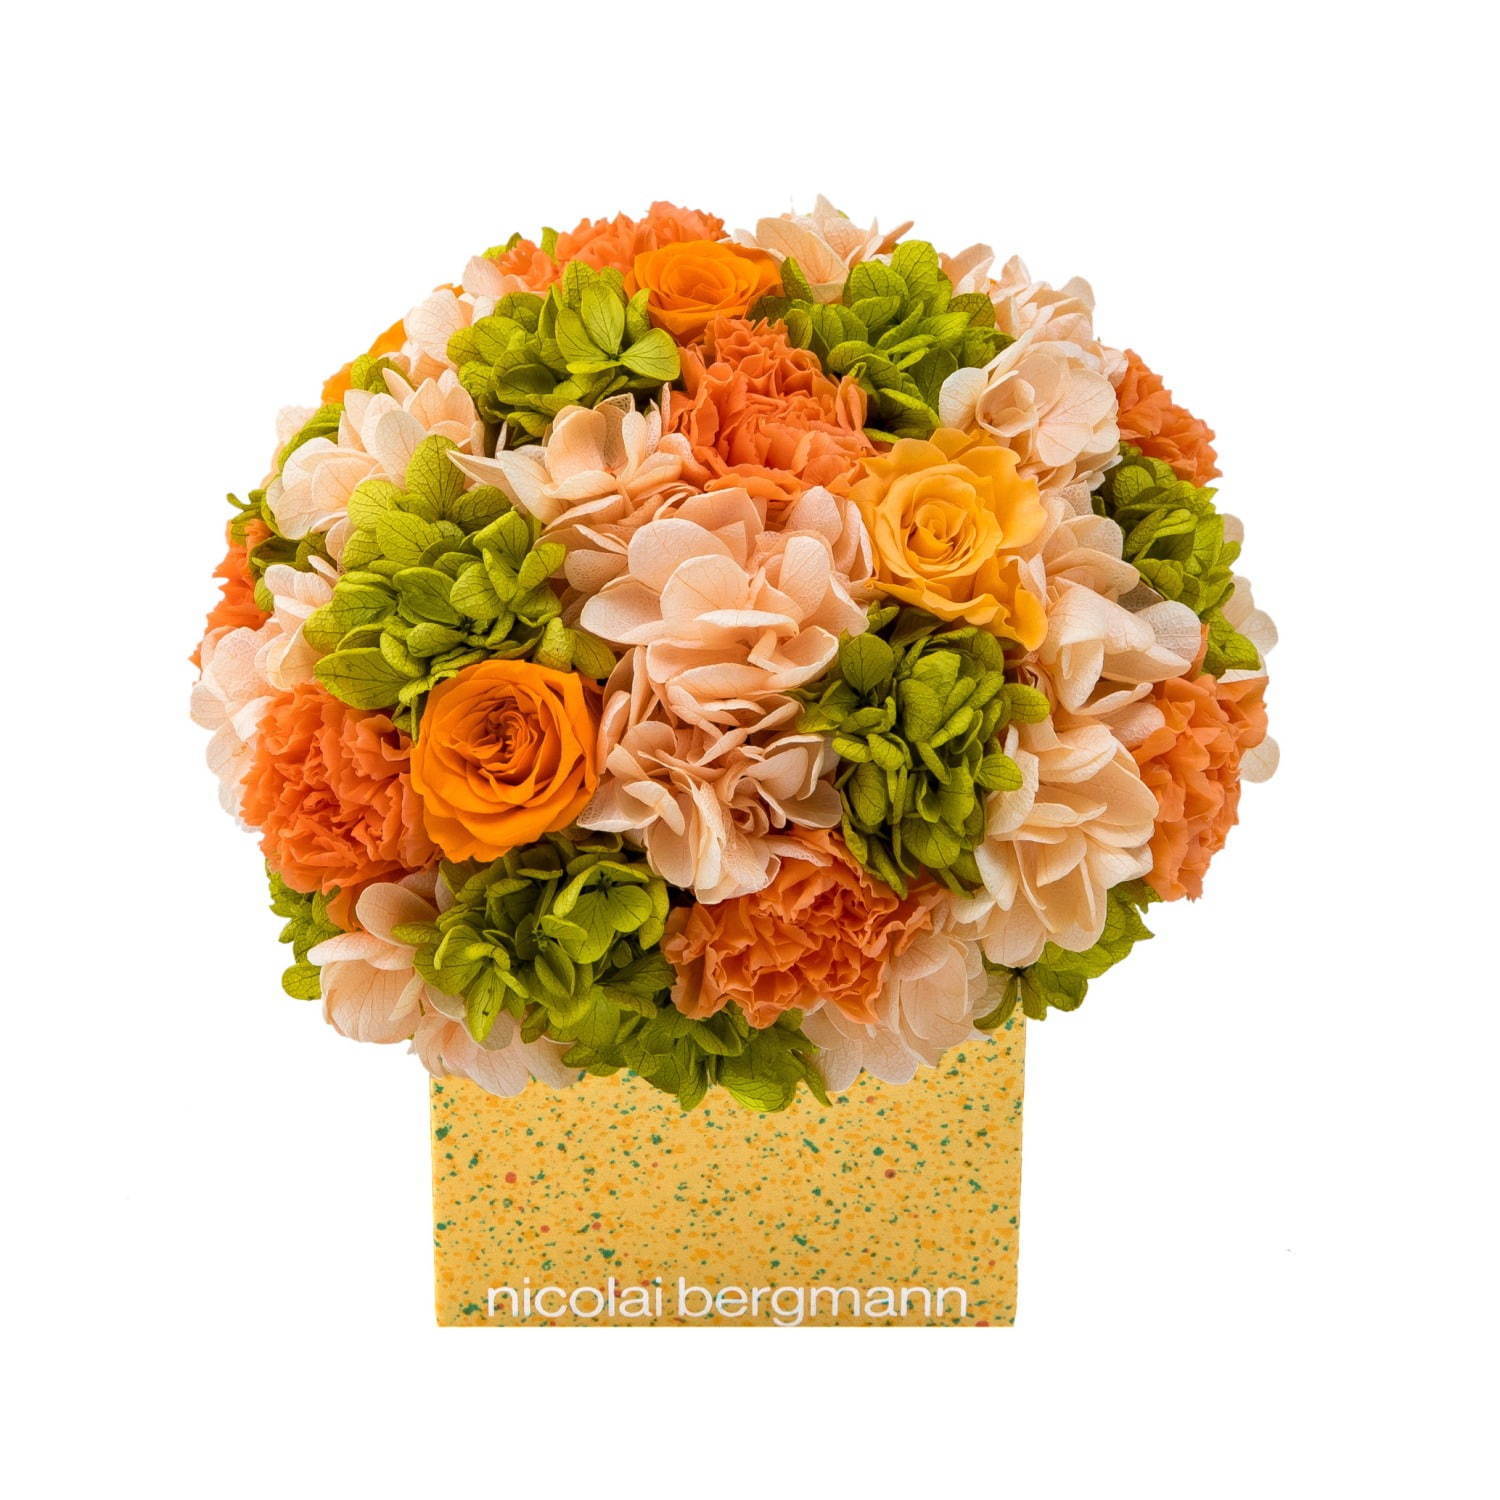 ニコライ バーグマン夏限定フラワーボックス、オレンジ×グリーンの花々をドット柄ボックスに詰めて｜写真4